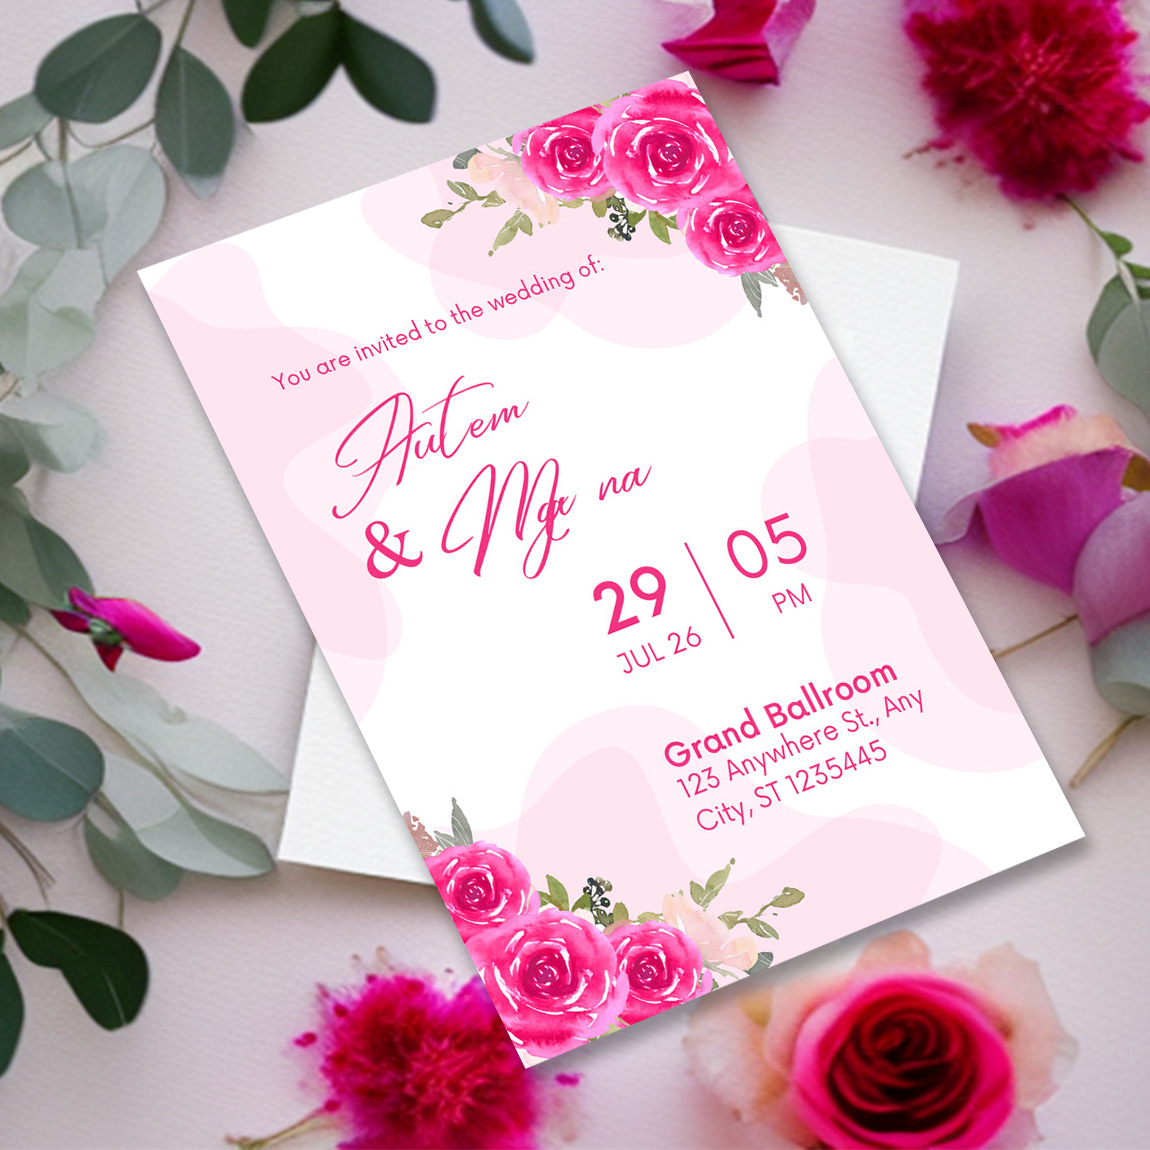 Wedding invitation card - Thiệp mời đám cưới là một phần quan trọng trong bất cứ đám cưới nào. Hãy cùng xem các mẫu thiệp mời đám cưới để lựa chọn mẫu ấn tượng và tạo sự kết nối với khách mời của bạn trước khi đám cưới diễn ra.